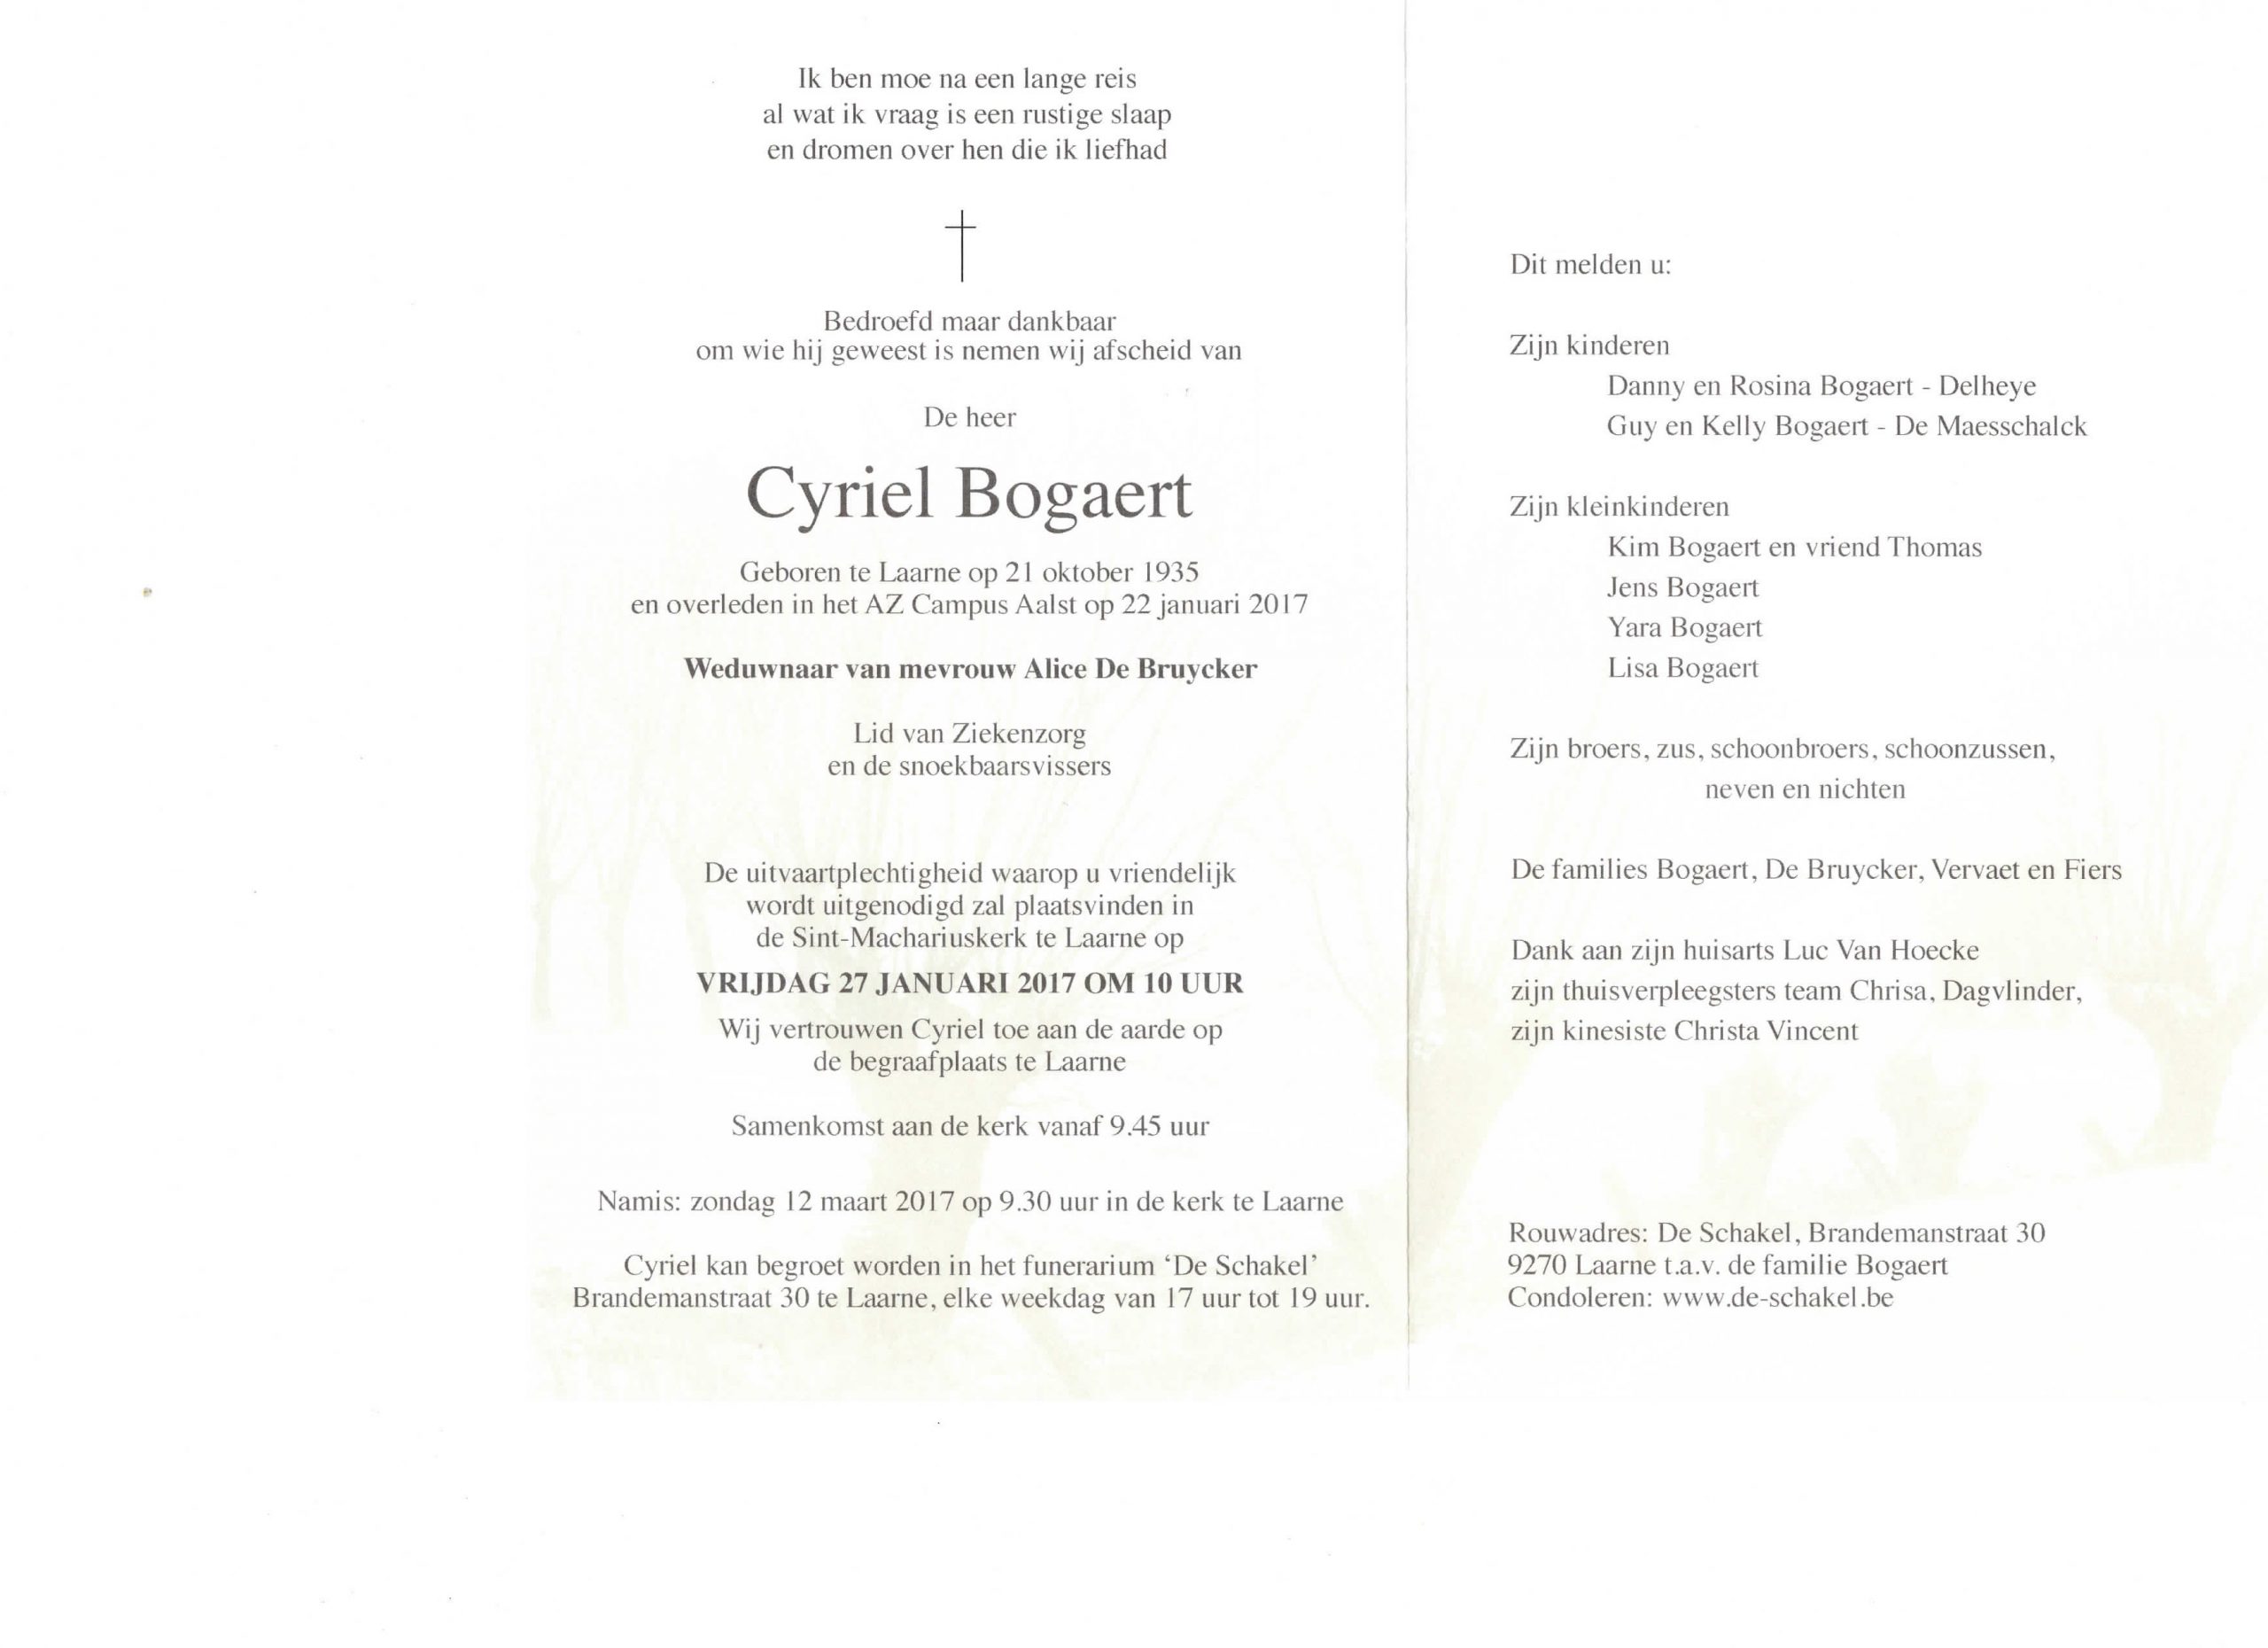 Met droefheid melden wij u het overlijden van Cyriel Bogaert